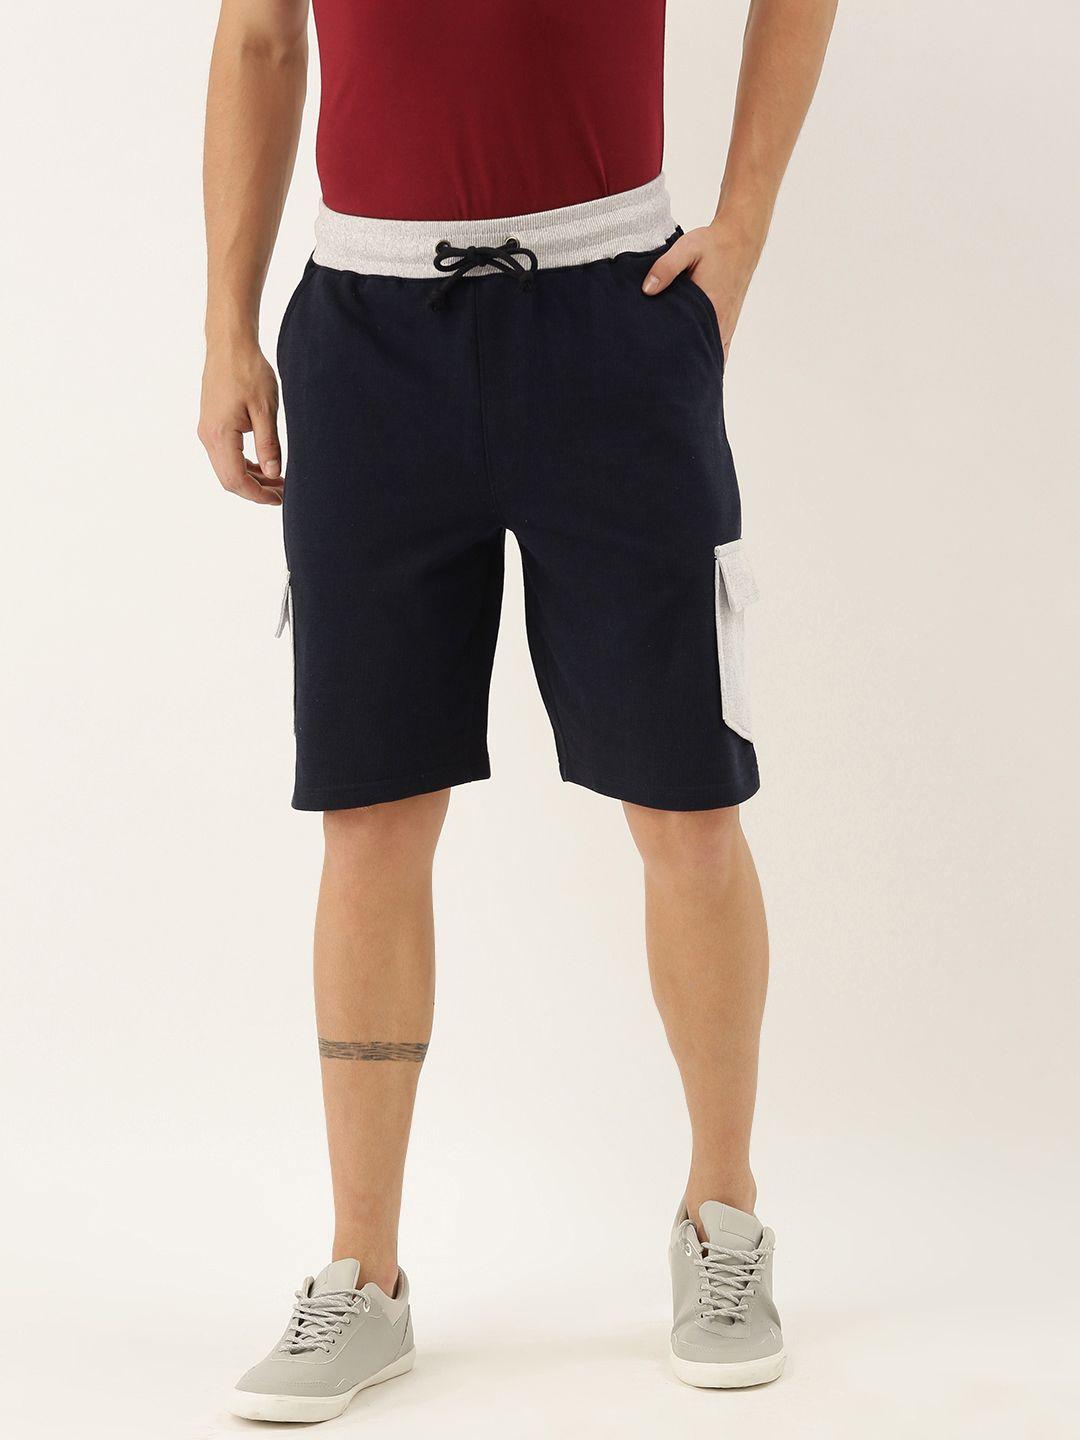 arise men navy blue solid regular fit regular shorts with contrast pocket detailing